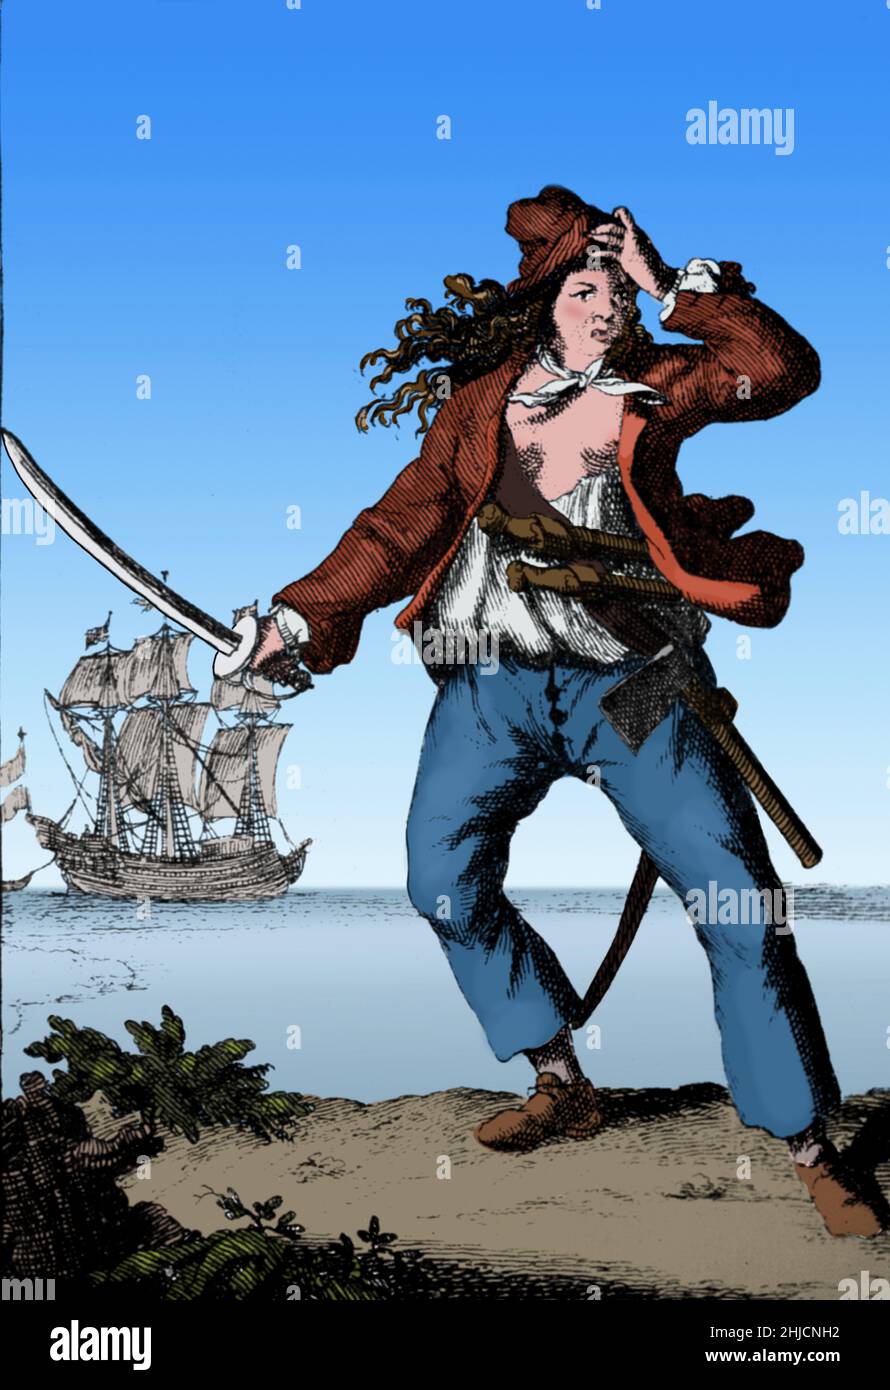 Mary Read AKA Mark Read (1685 - 1721) è stata una pirata inglese. Cominciò a vestirsi da ragazzo da sua madre per ricevere denaro di eredità e poi per unirsi all'esercito britannico. Nel 1720 incontrò Jack Rackham e si unì al suo equipaggio, vestendosi come uomo accanto a Anne Bonny. Rackham e il suo equipaggio sono stati arrestati. Bonny e Read erano incinte e ricevevano condanne ritardate, ma Read morì di febbre. Howard Pyle's Book of Pirates, 1921 (tagliato e pulito). Foto Stock